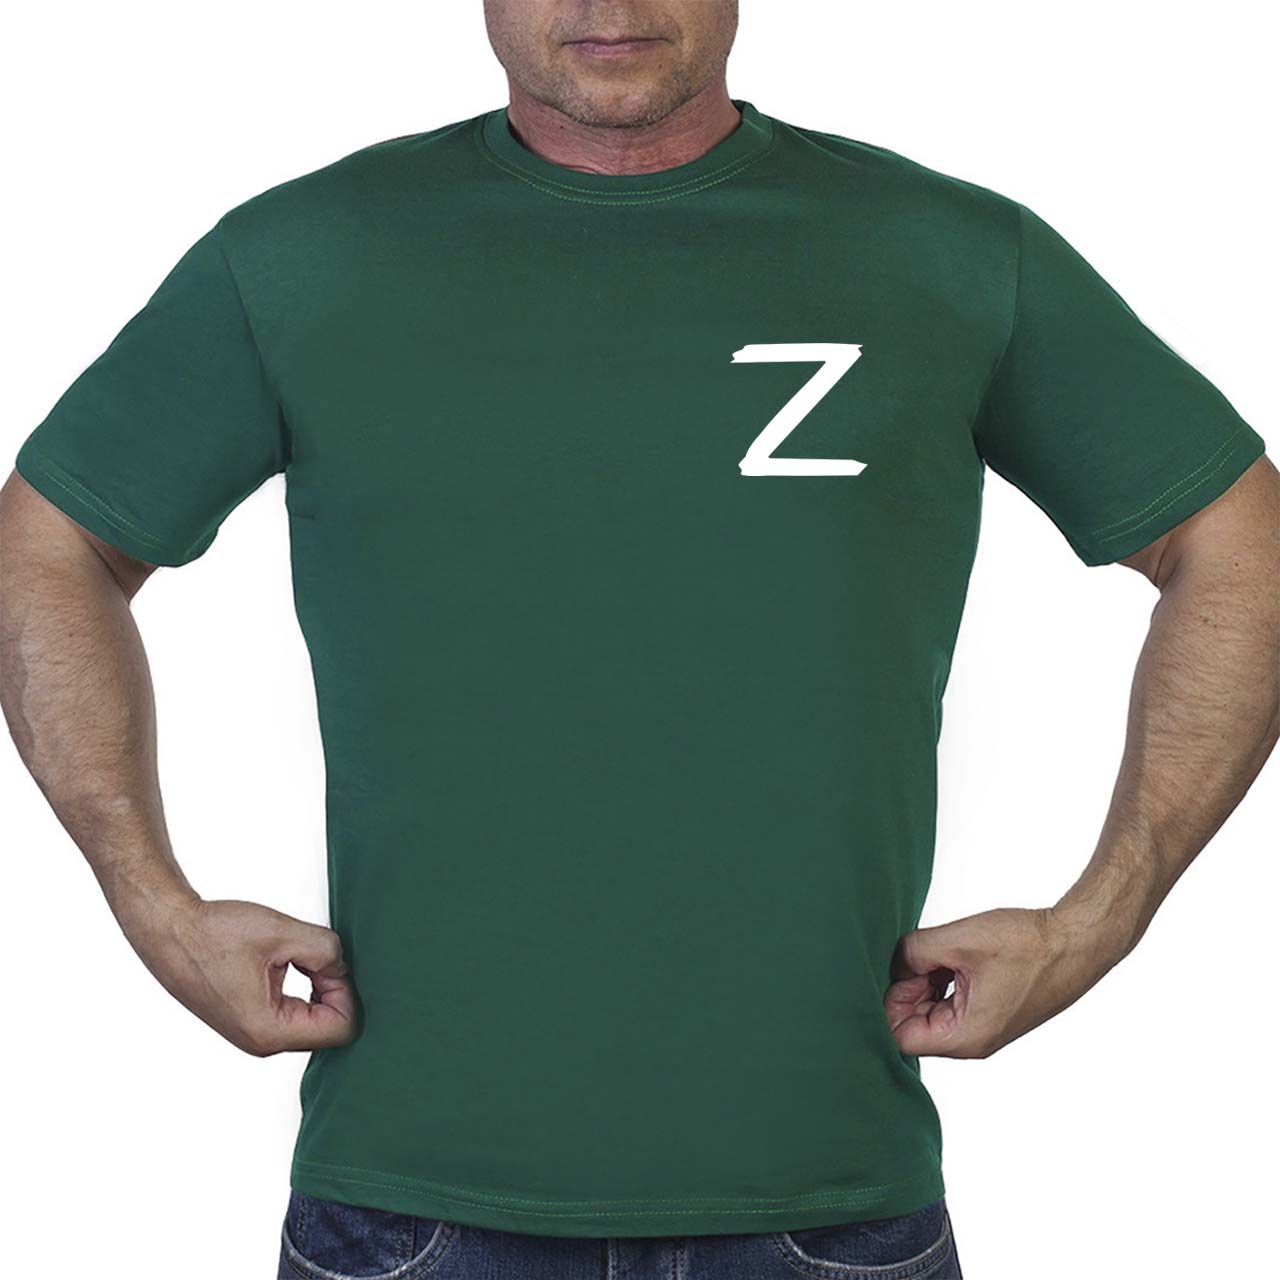 Купить зеленую футболку с буквой "Z"